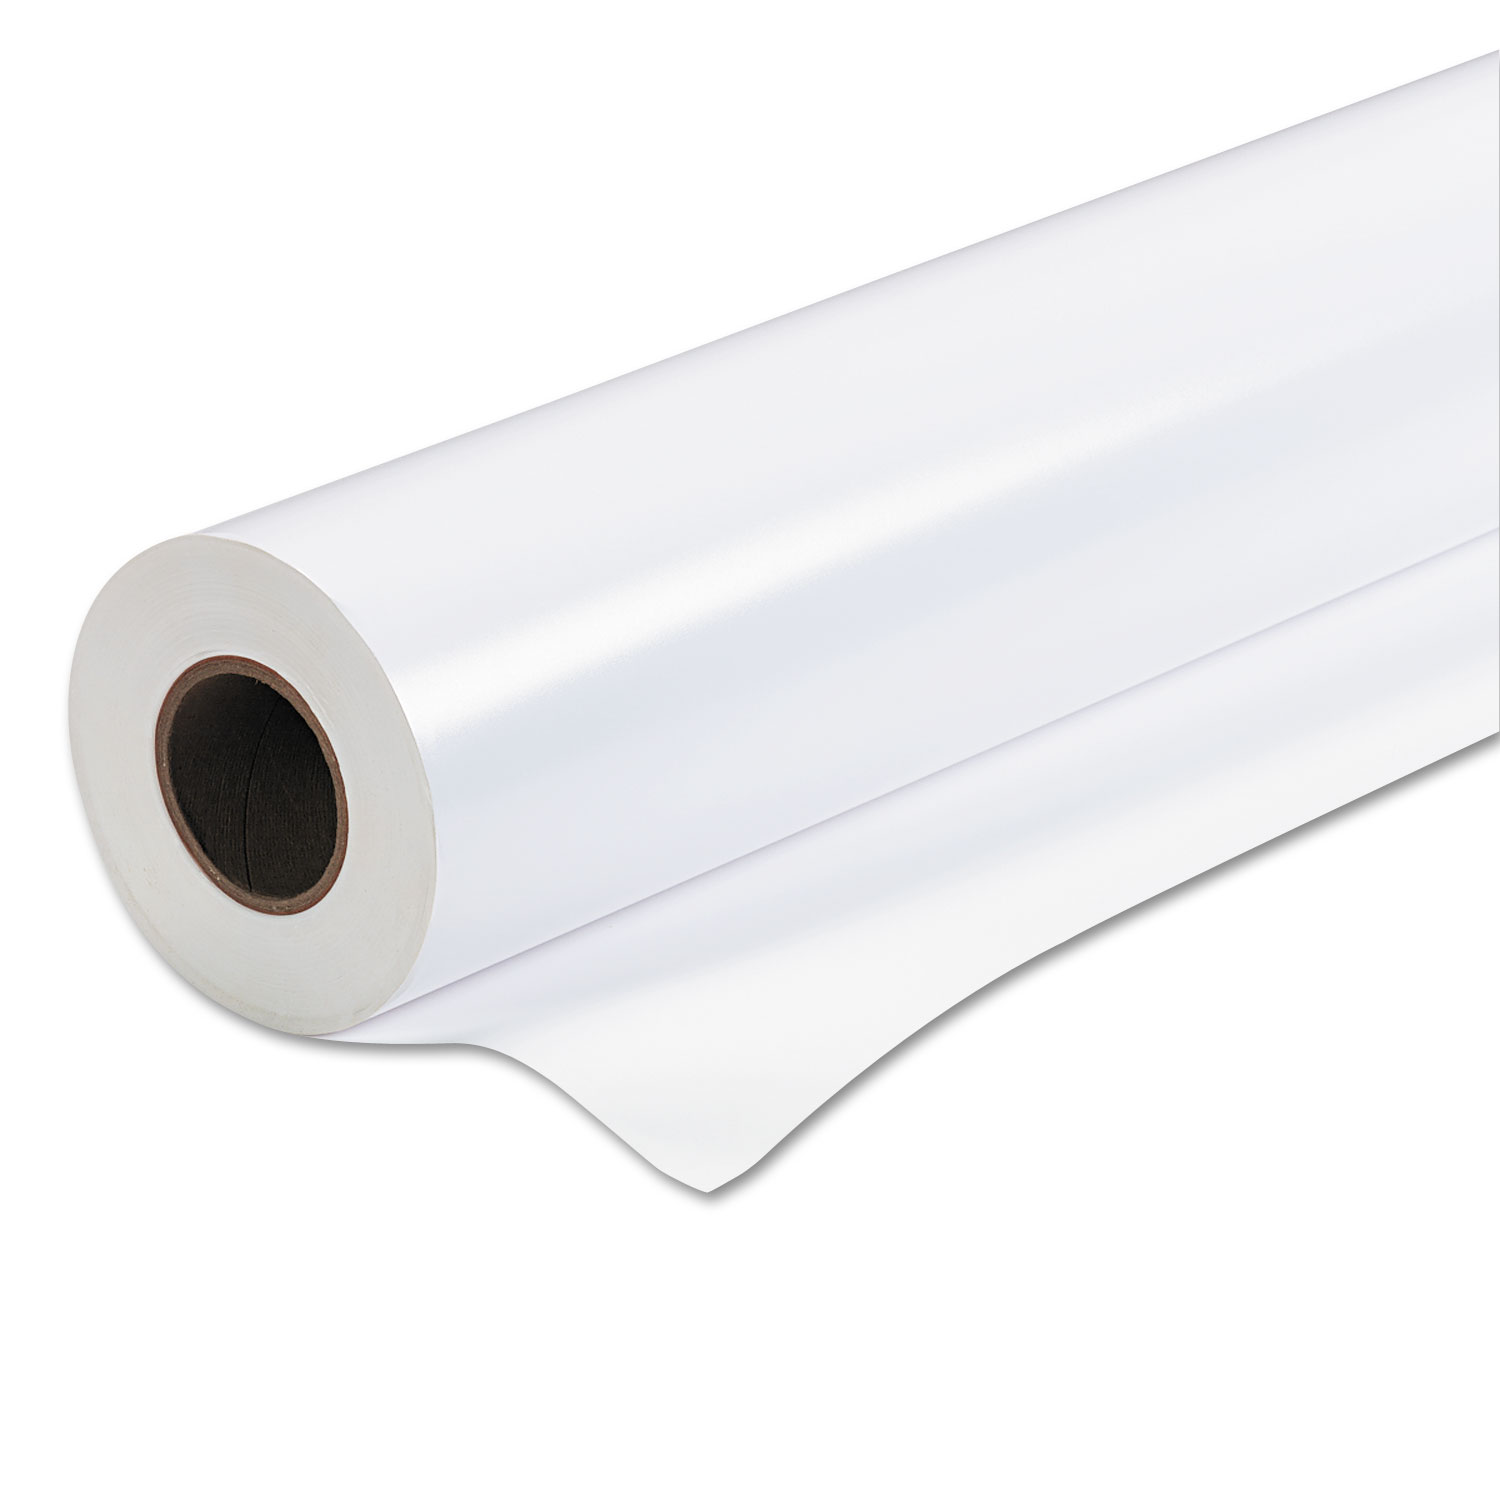  Epson S041395 Premium Semigloss Photo Paper Roll, 7 mil, 44 x 100 ft, Semi-Gloss White (EPSS041395) 